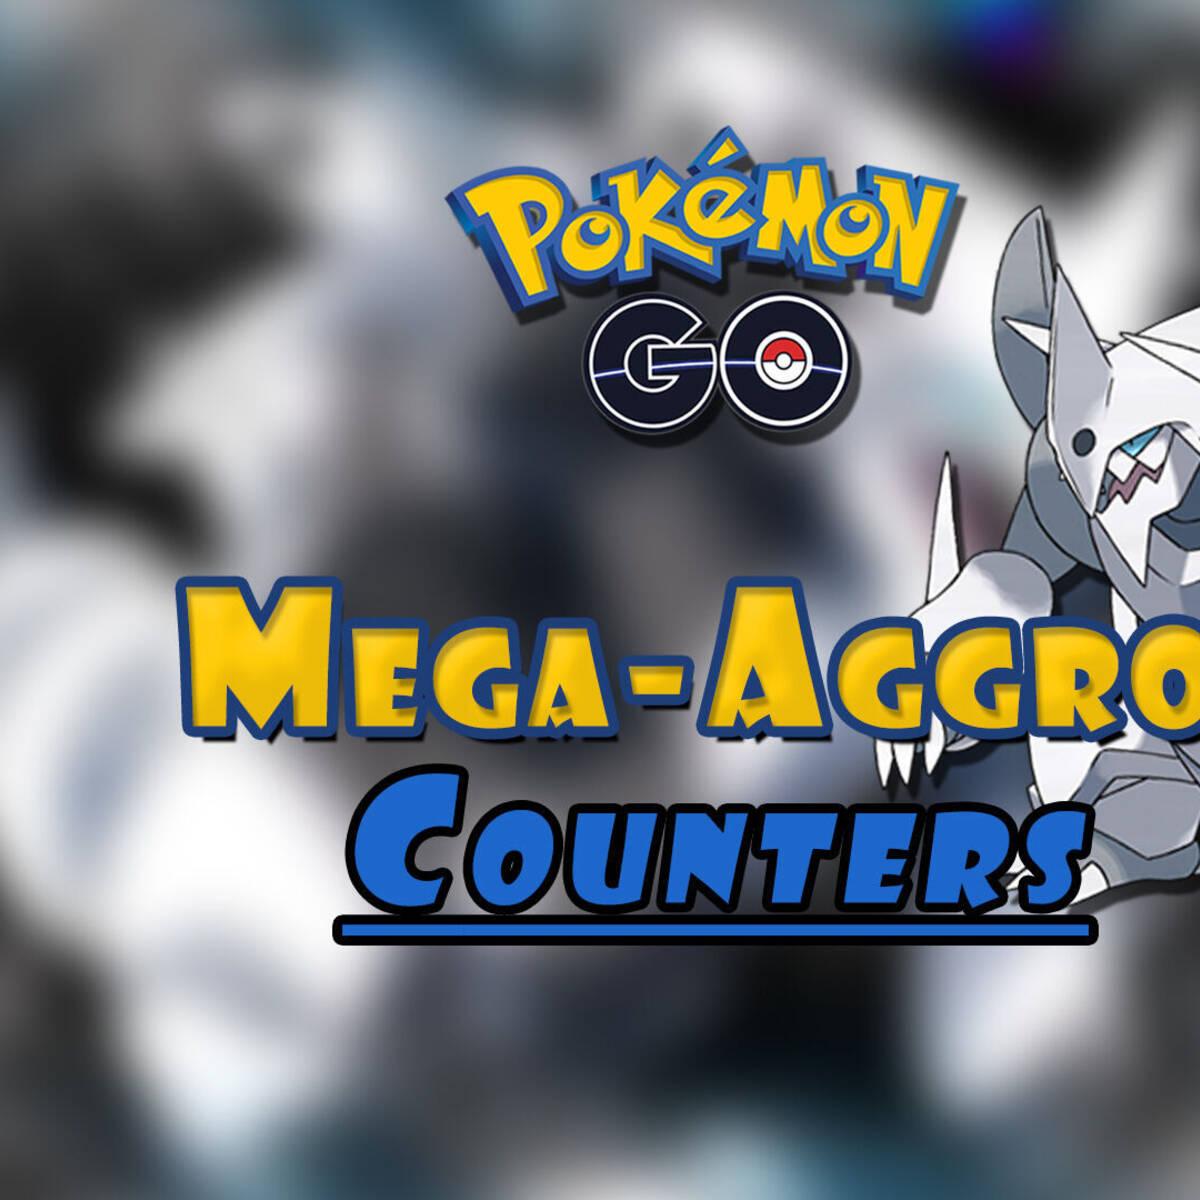 Pokémon GO - Melhores counters para vencer Celesteela